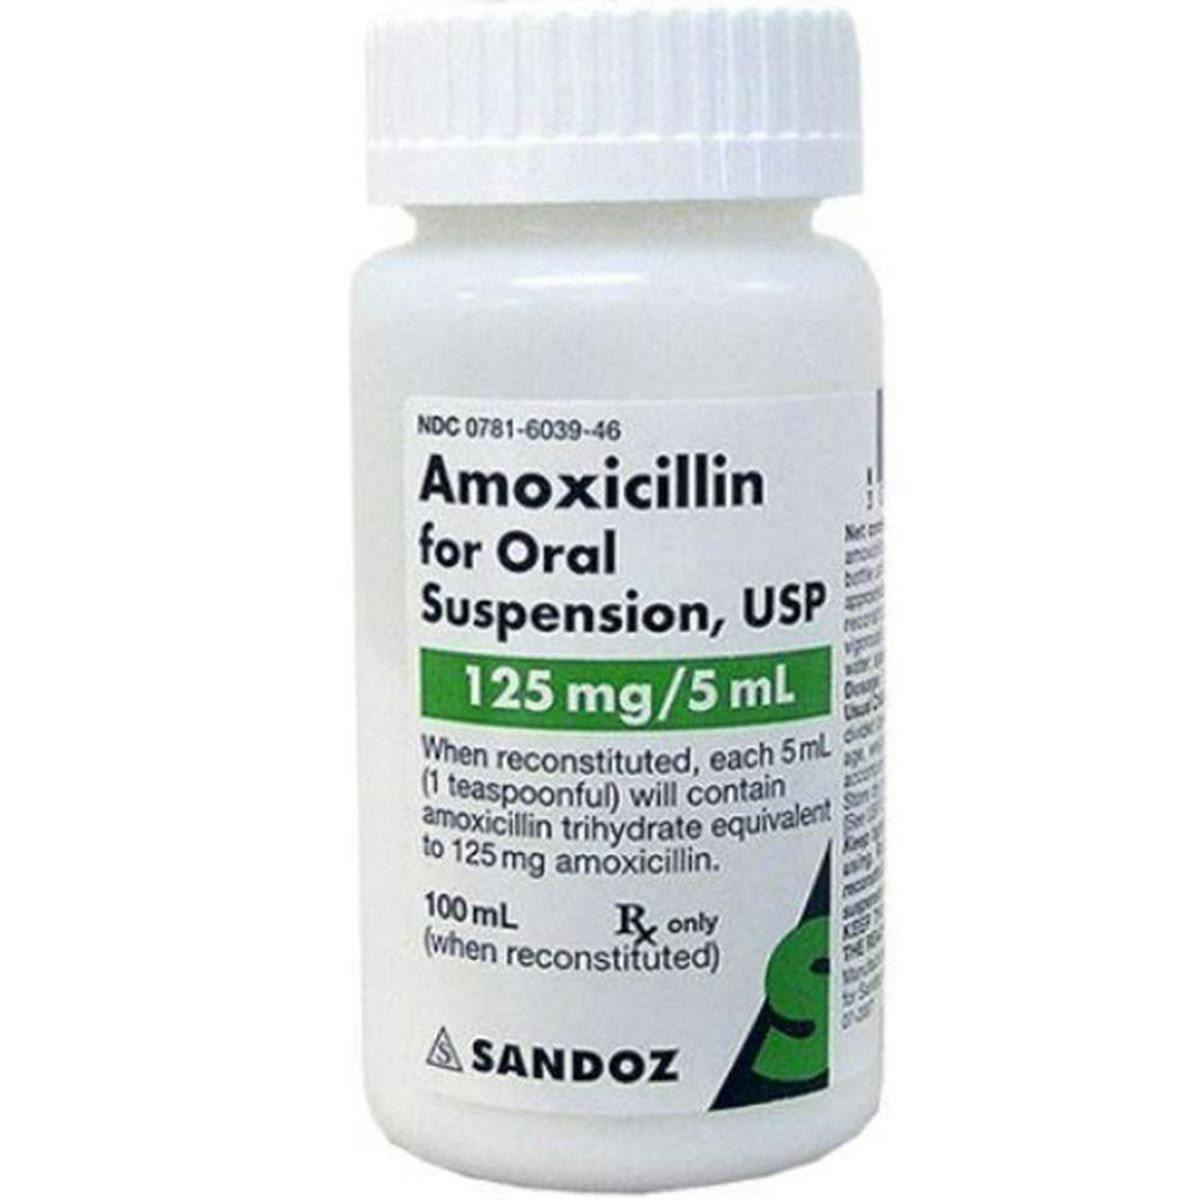 Amoxicillin in Shortage Due to Increased Demand